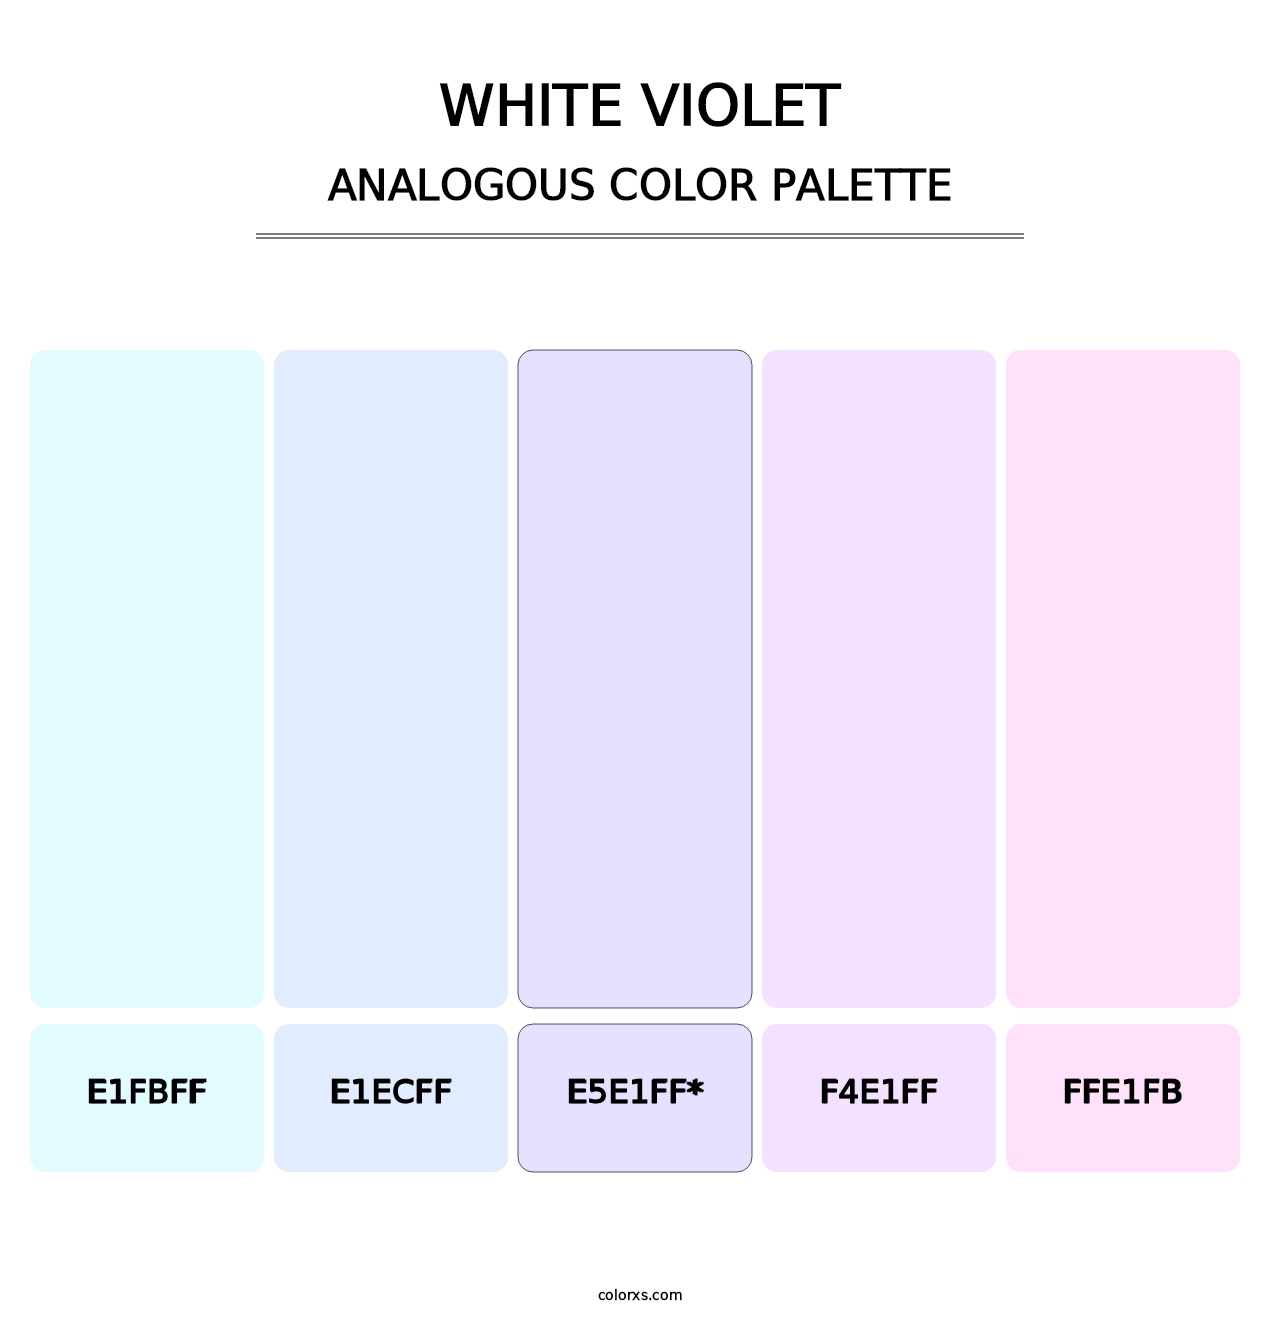 White Violet - Analogous Color Palette